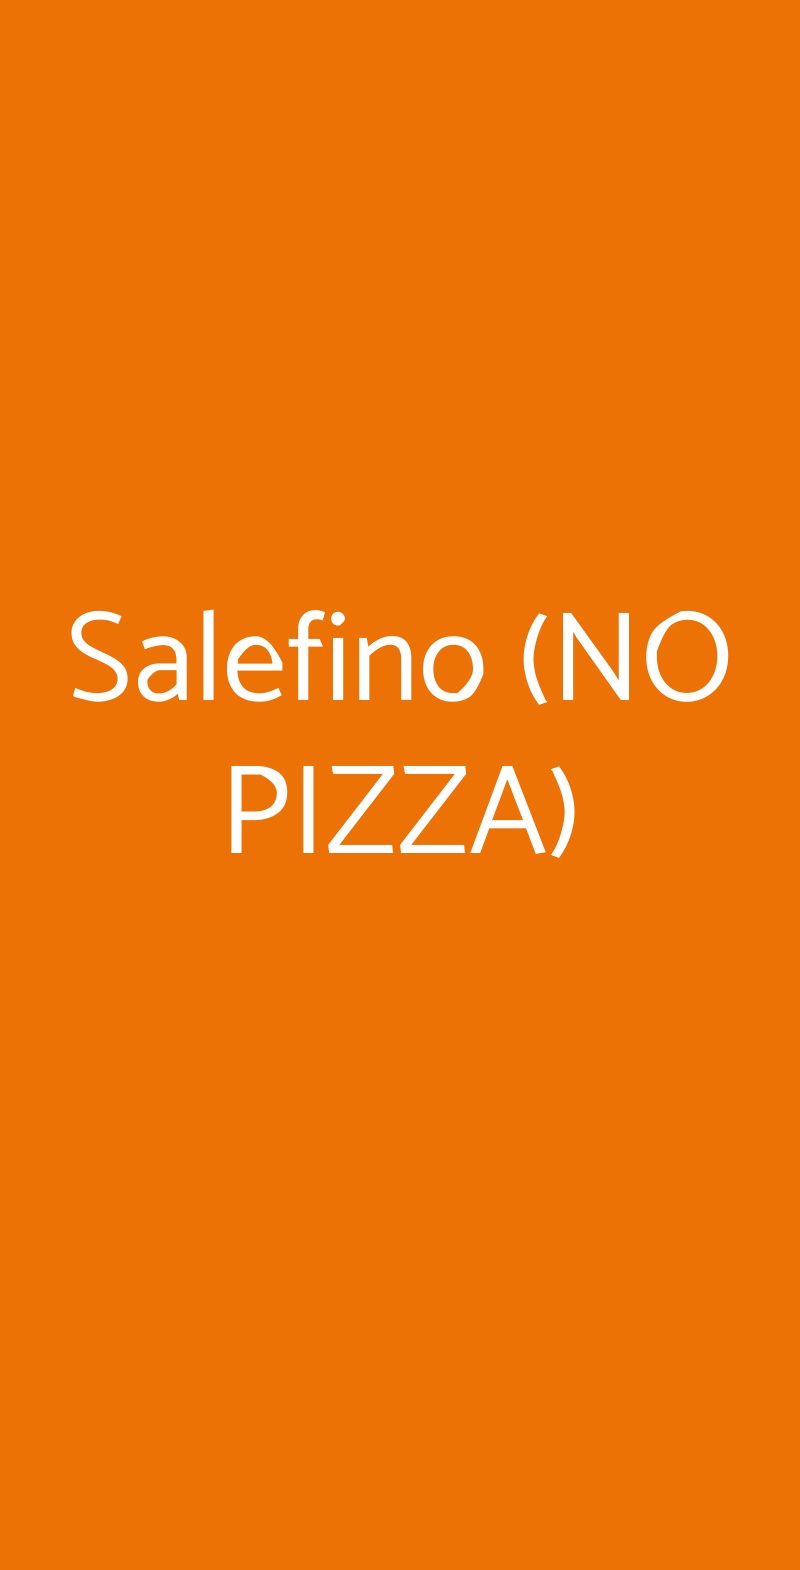 Salefino (NO PIZZA) Milano menù 1 pagina